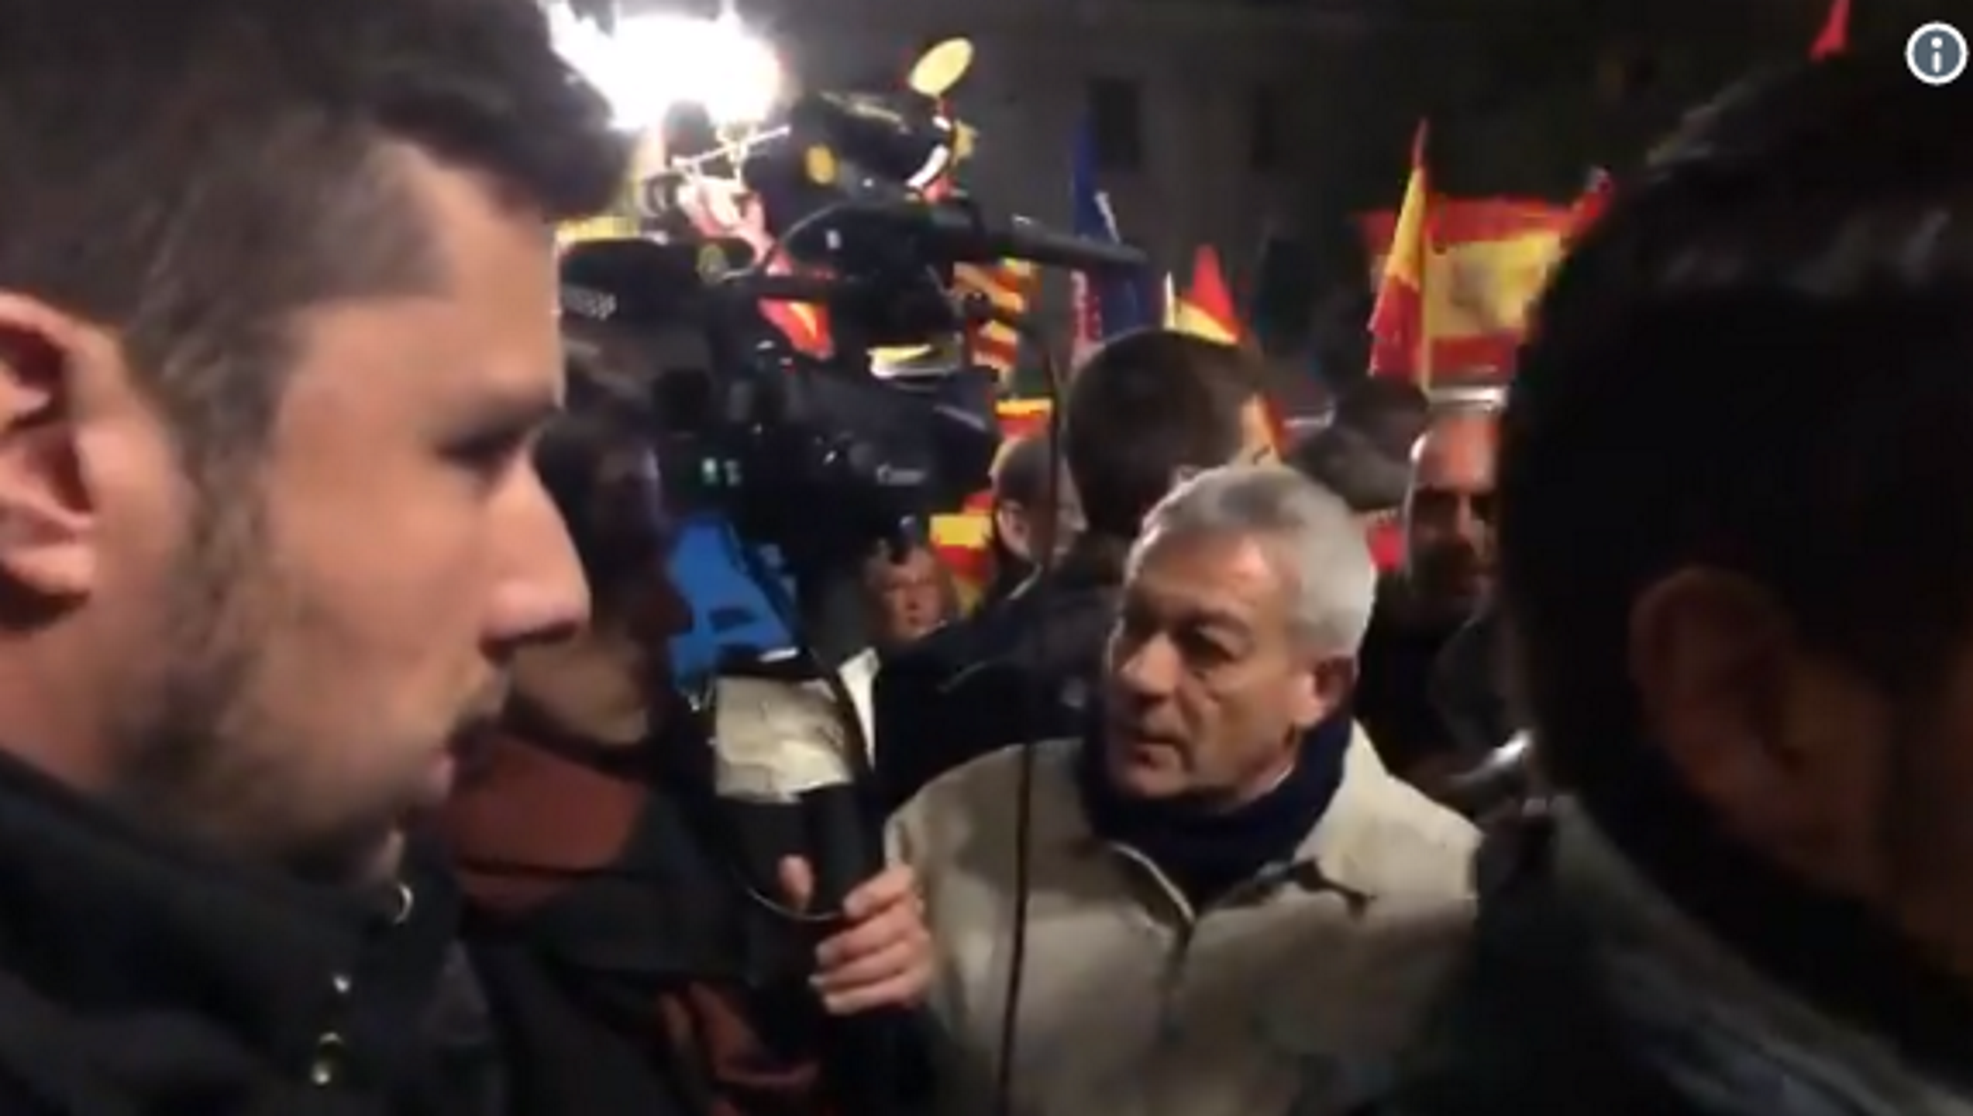 Incidente contra la prensa en la manifestación españolista de Sabadell